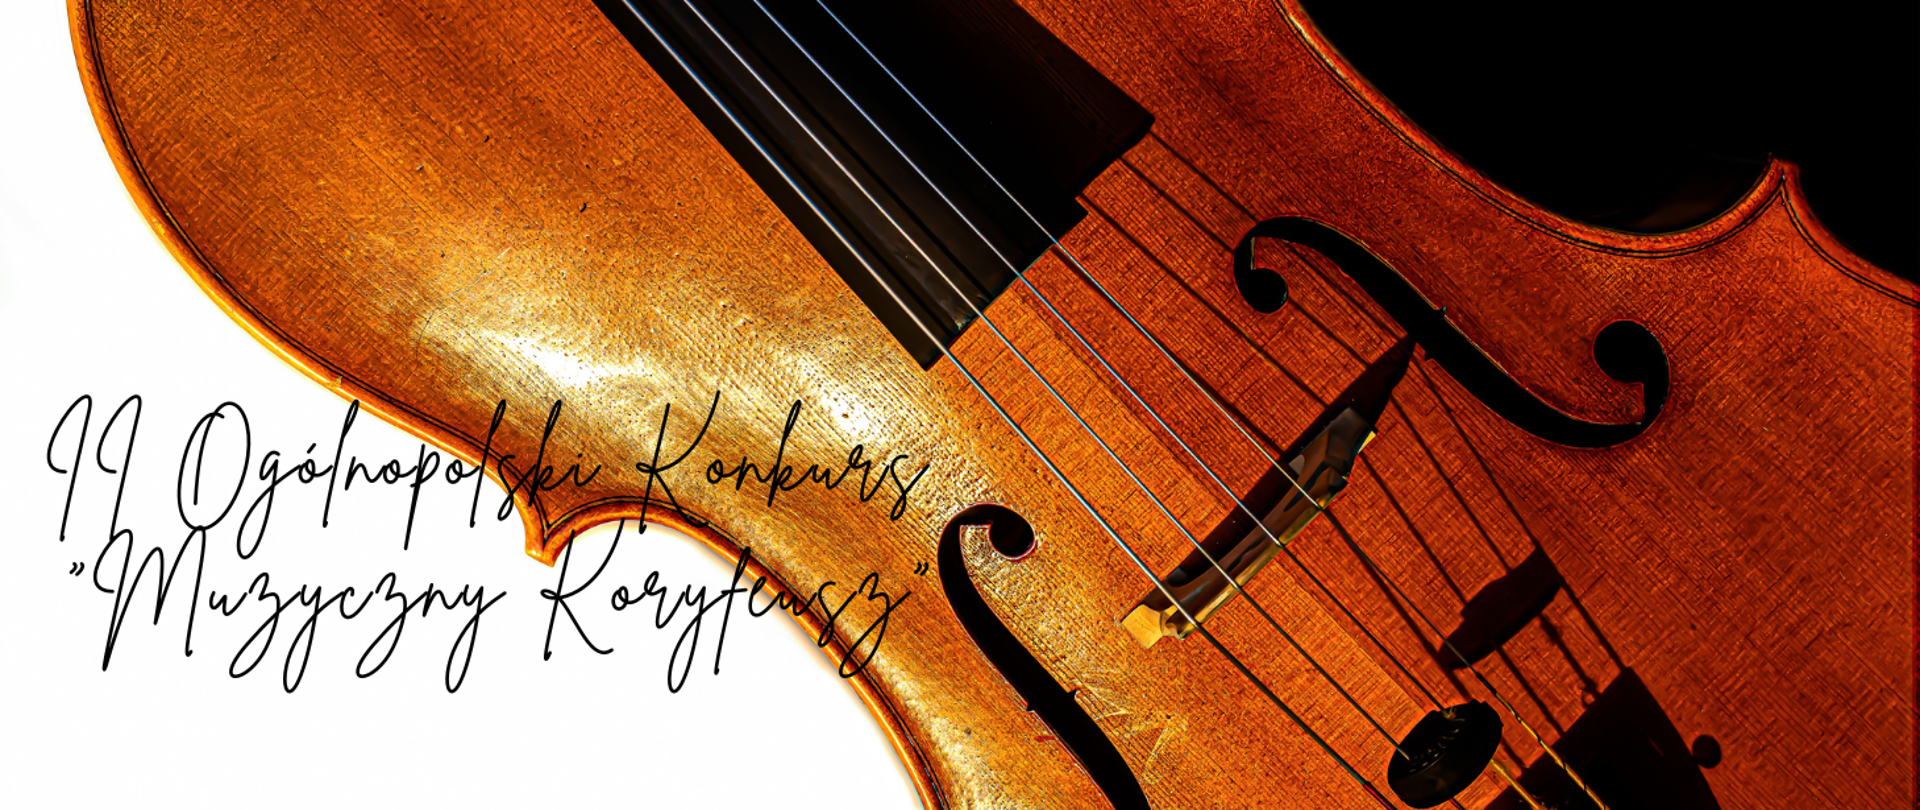 Kolorowa grafika skrzypiec ułożonych pod skosem (bez podbródka i gryfu). Z lewej strony skrzypiec białe tło, z prawej czarne tło. W lewym, dolnym rogu czarny napis II Ogólnopolski Konkurs "Muzyczny Koryfeusz"